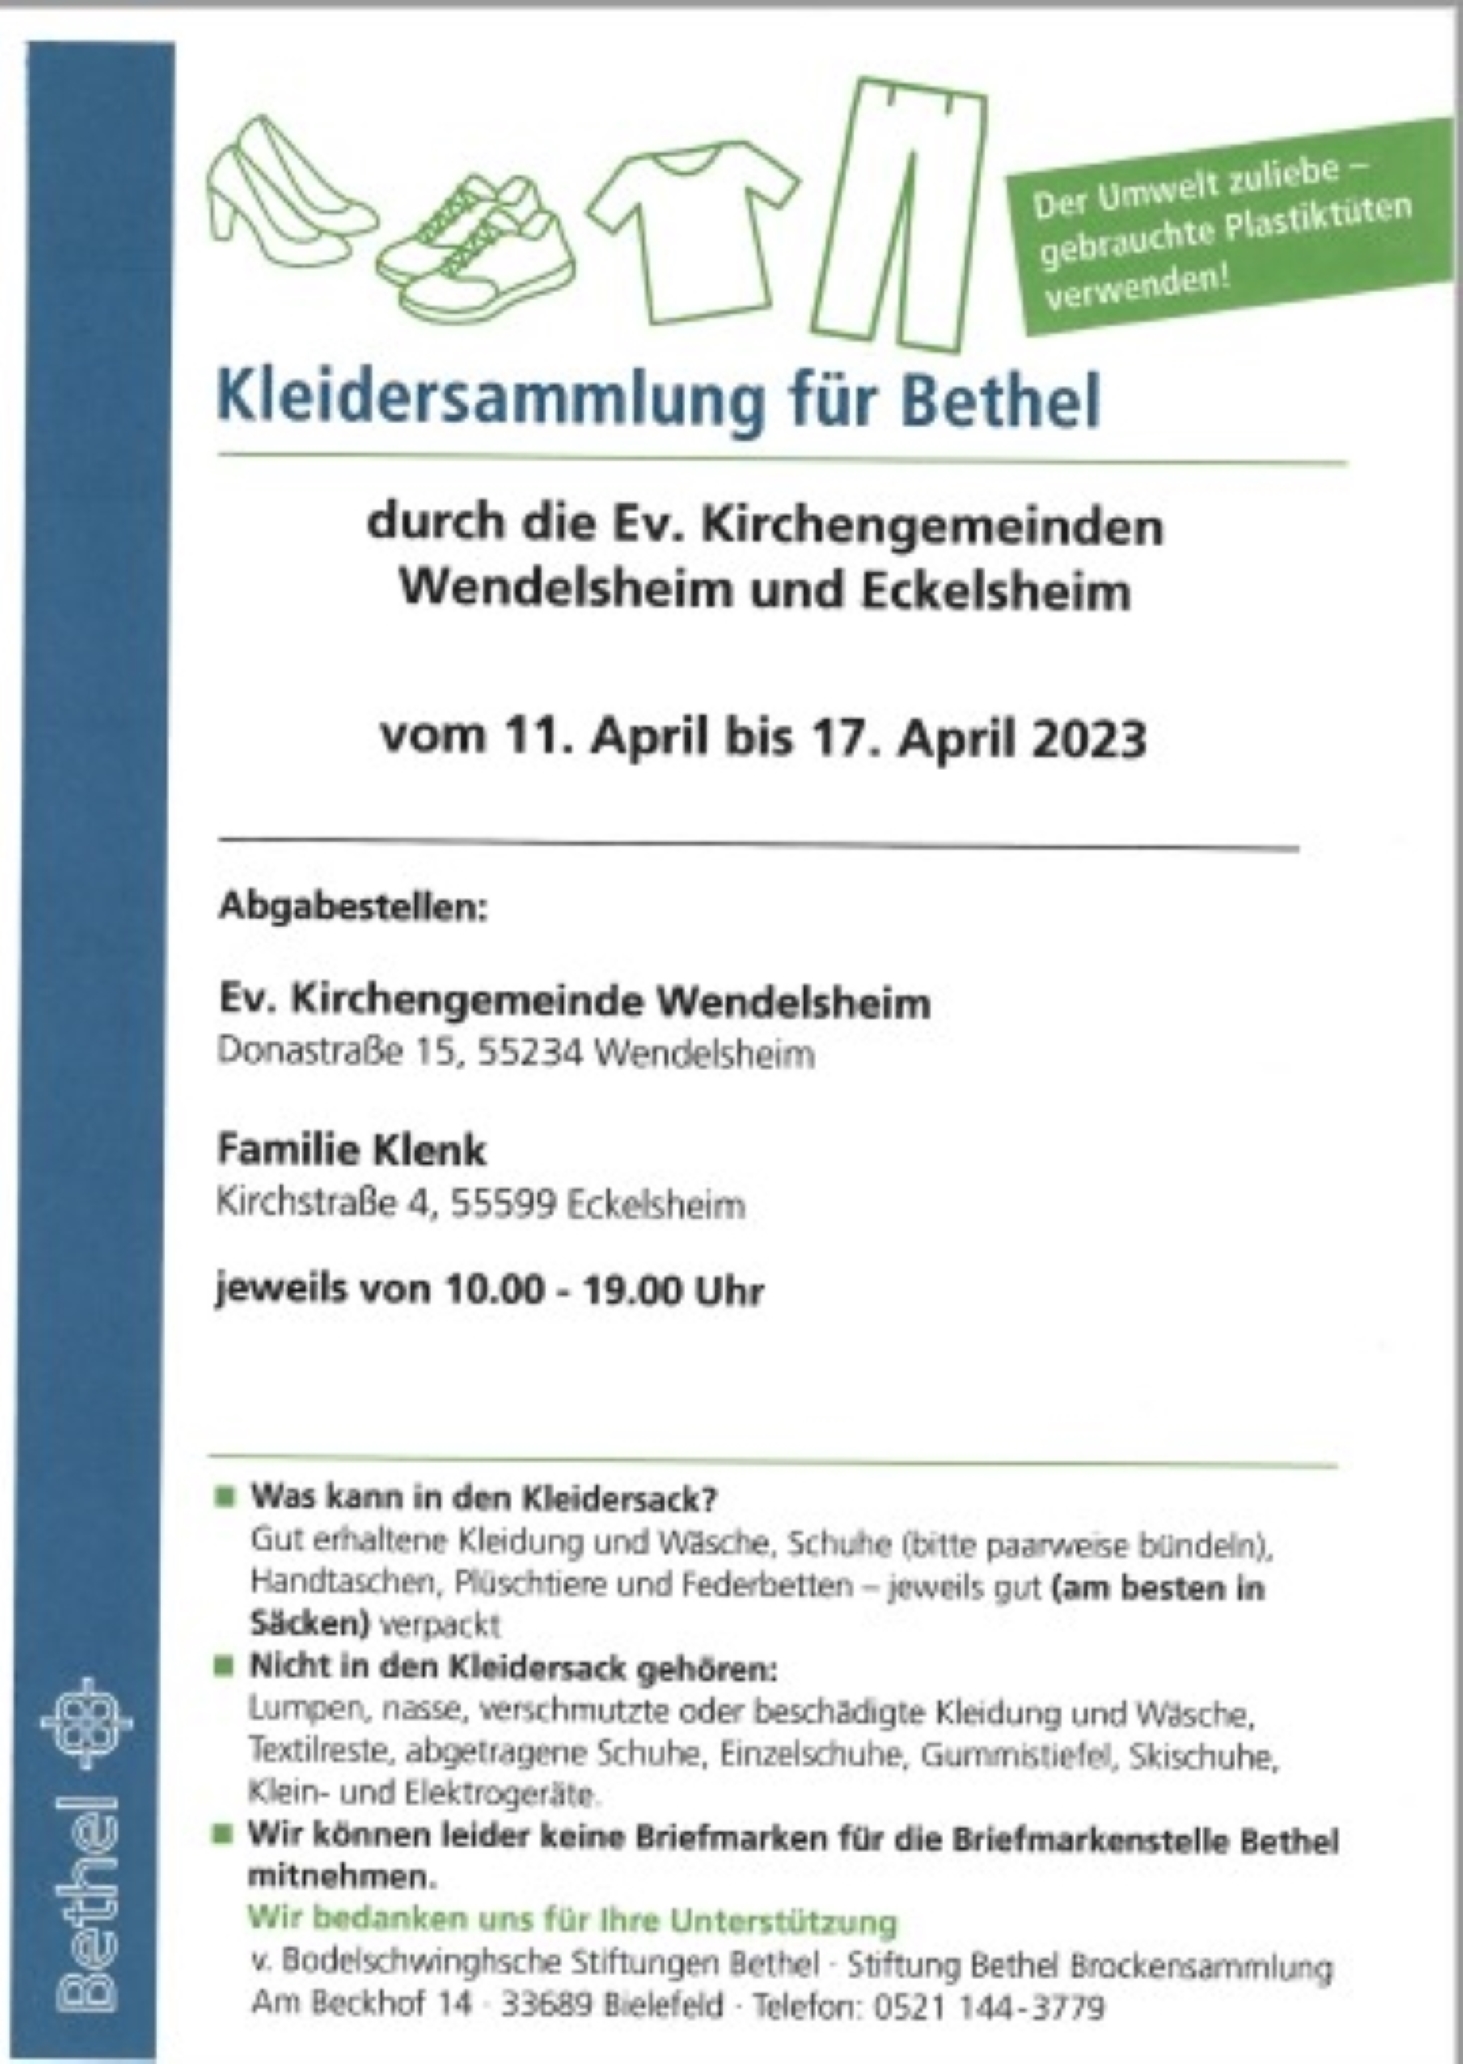 You are currently viewing Kleidersammlung für Bethel durch die Ev.Kirchengemeinden Wendelsheim und Eckelsheim vom 11.April bis 17.April 2023